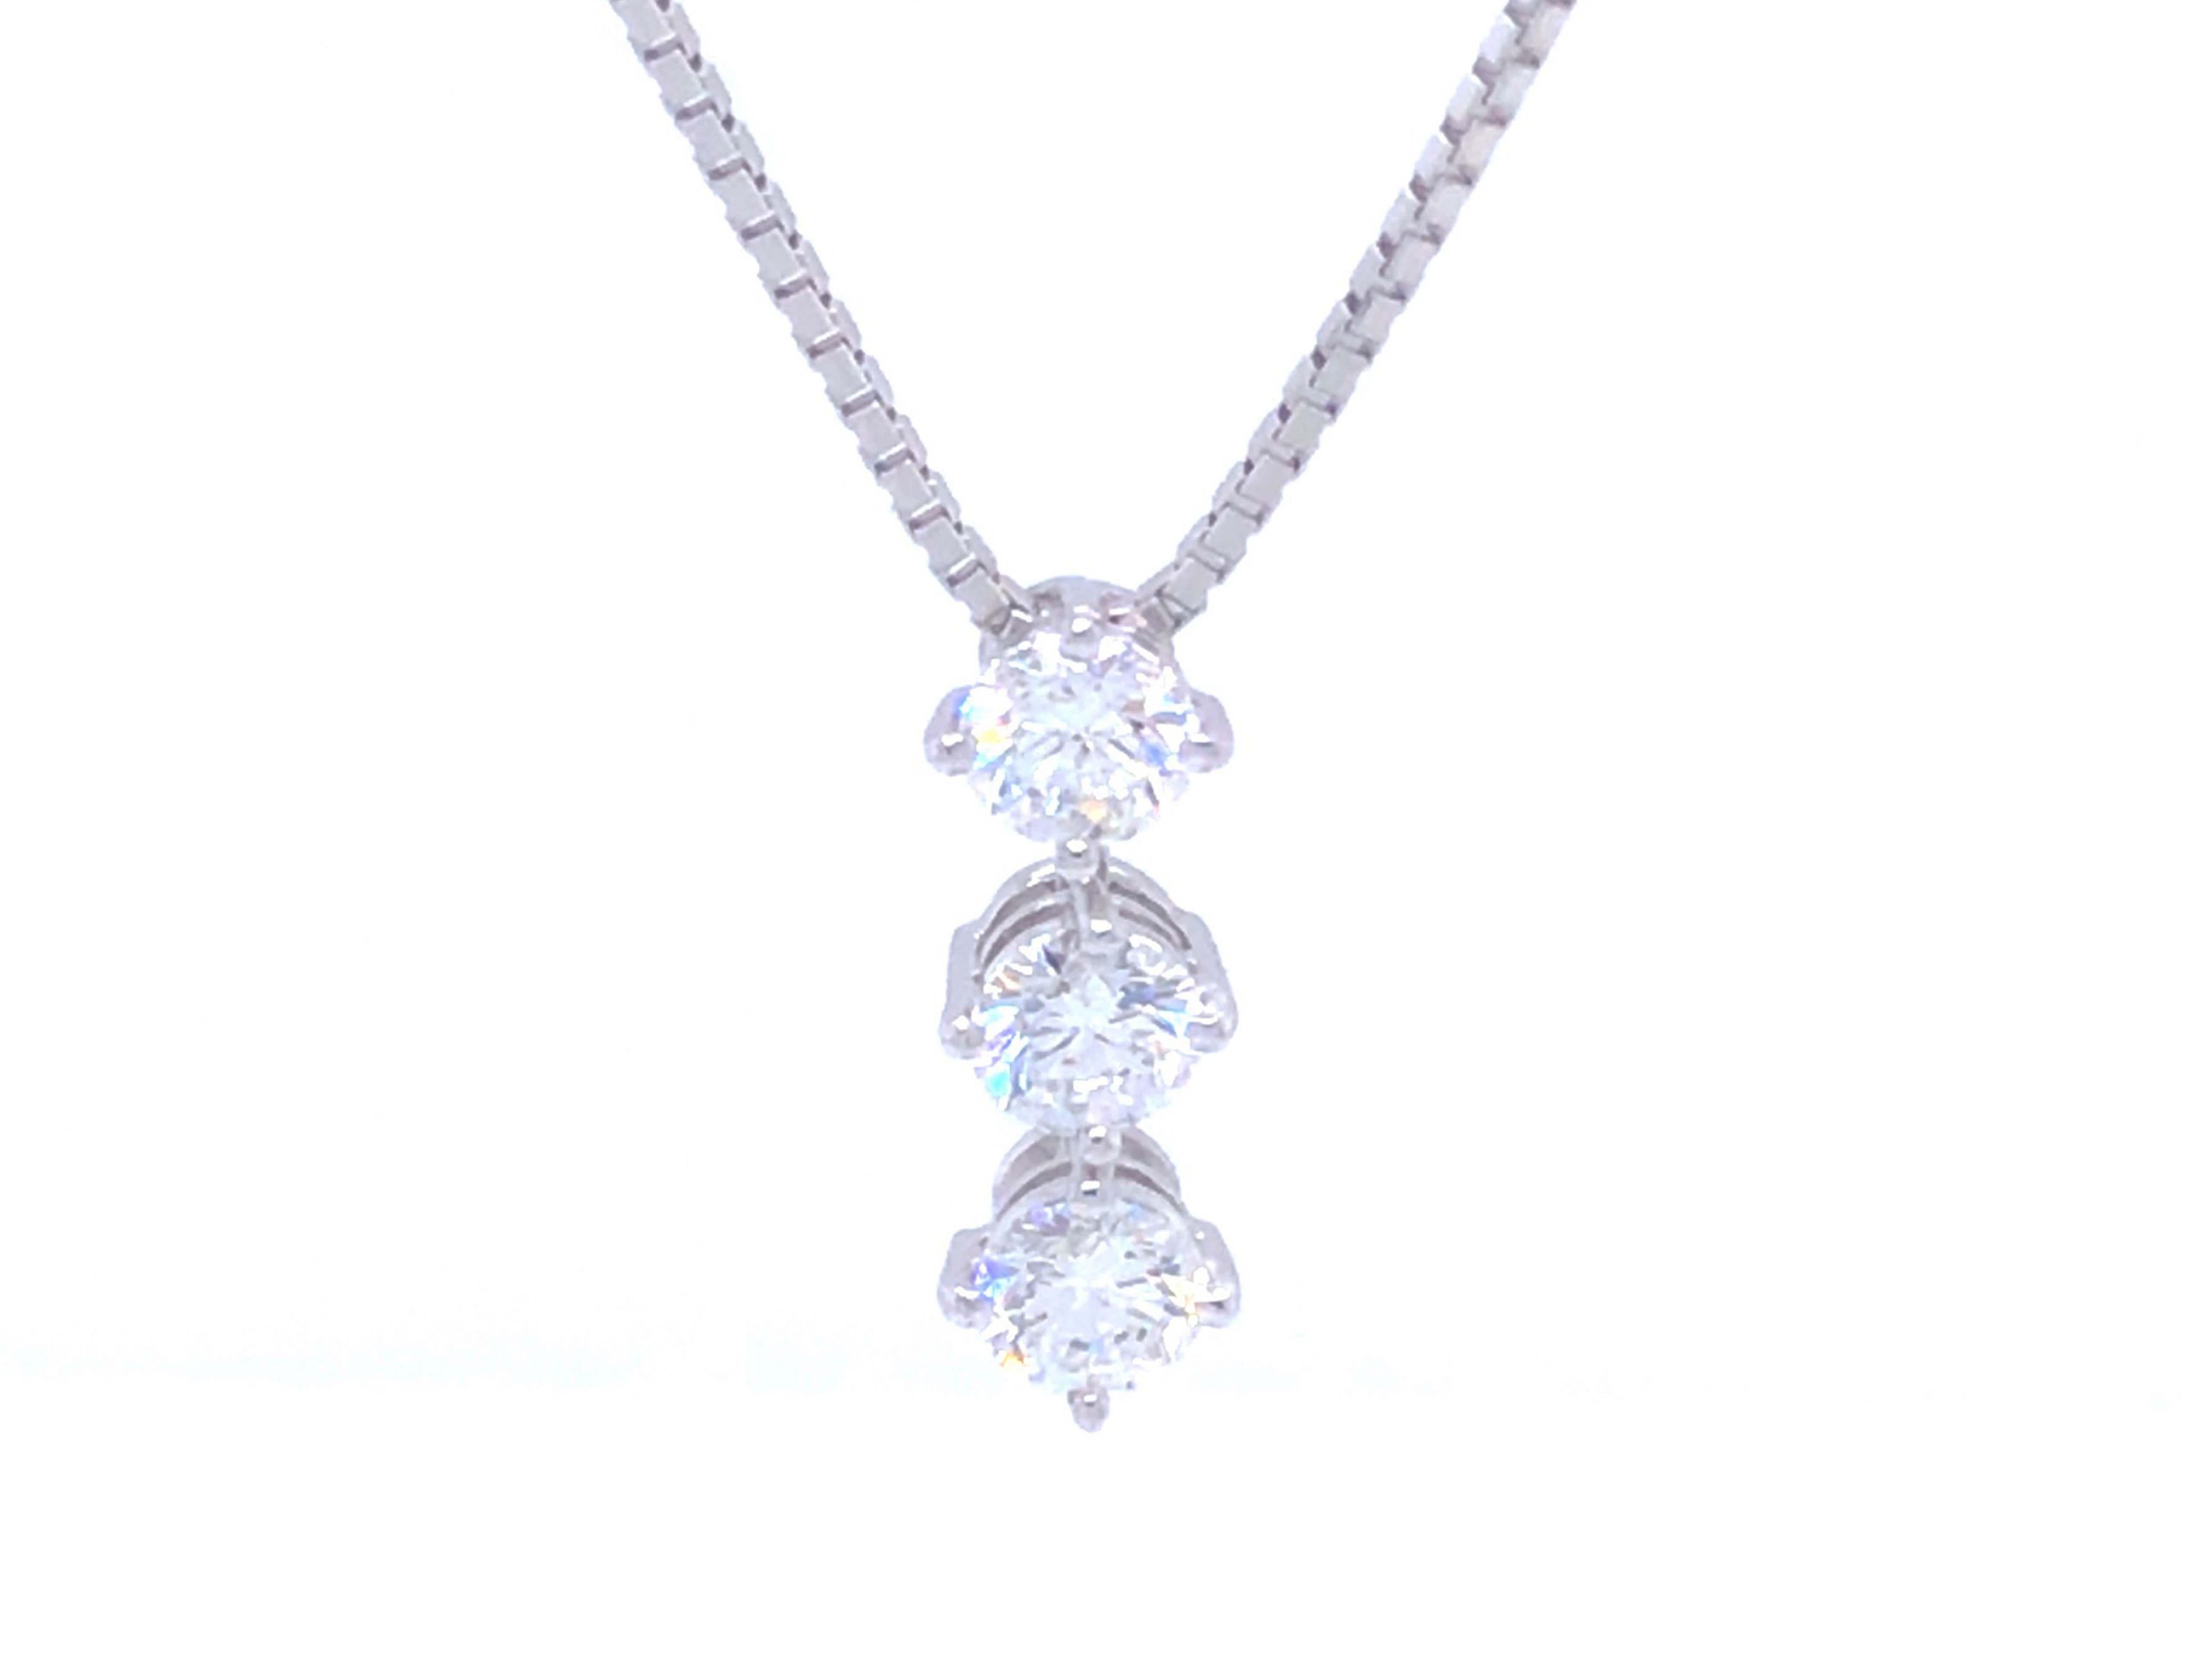 trilogy diamond necklace